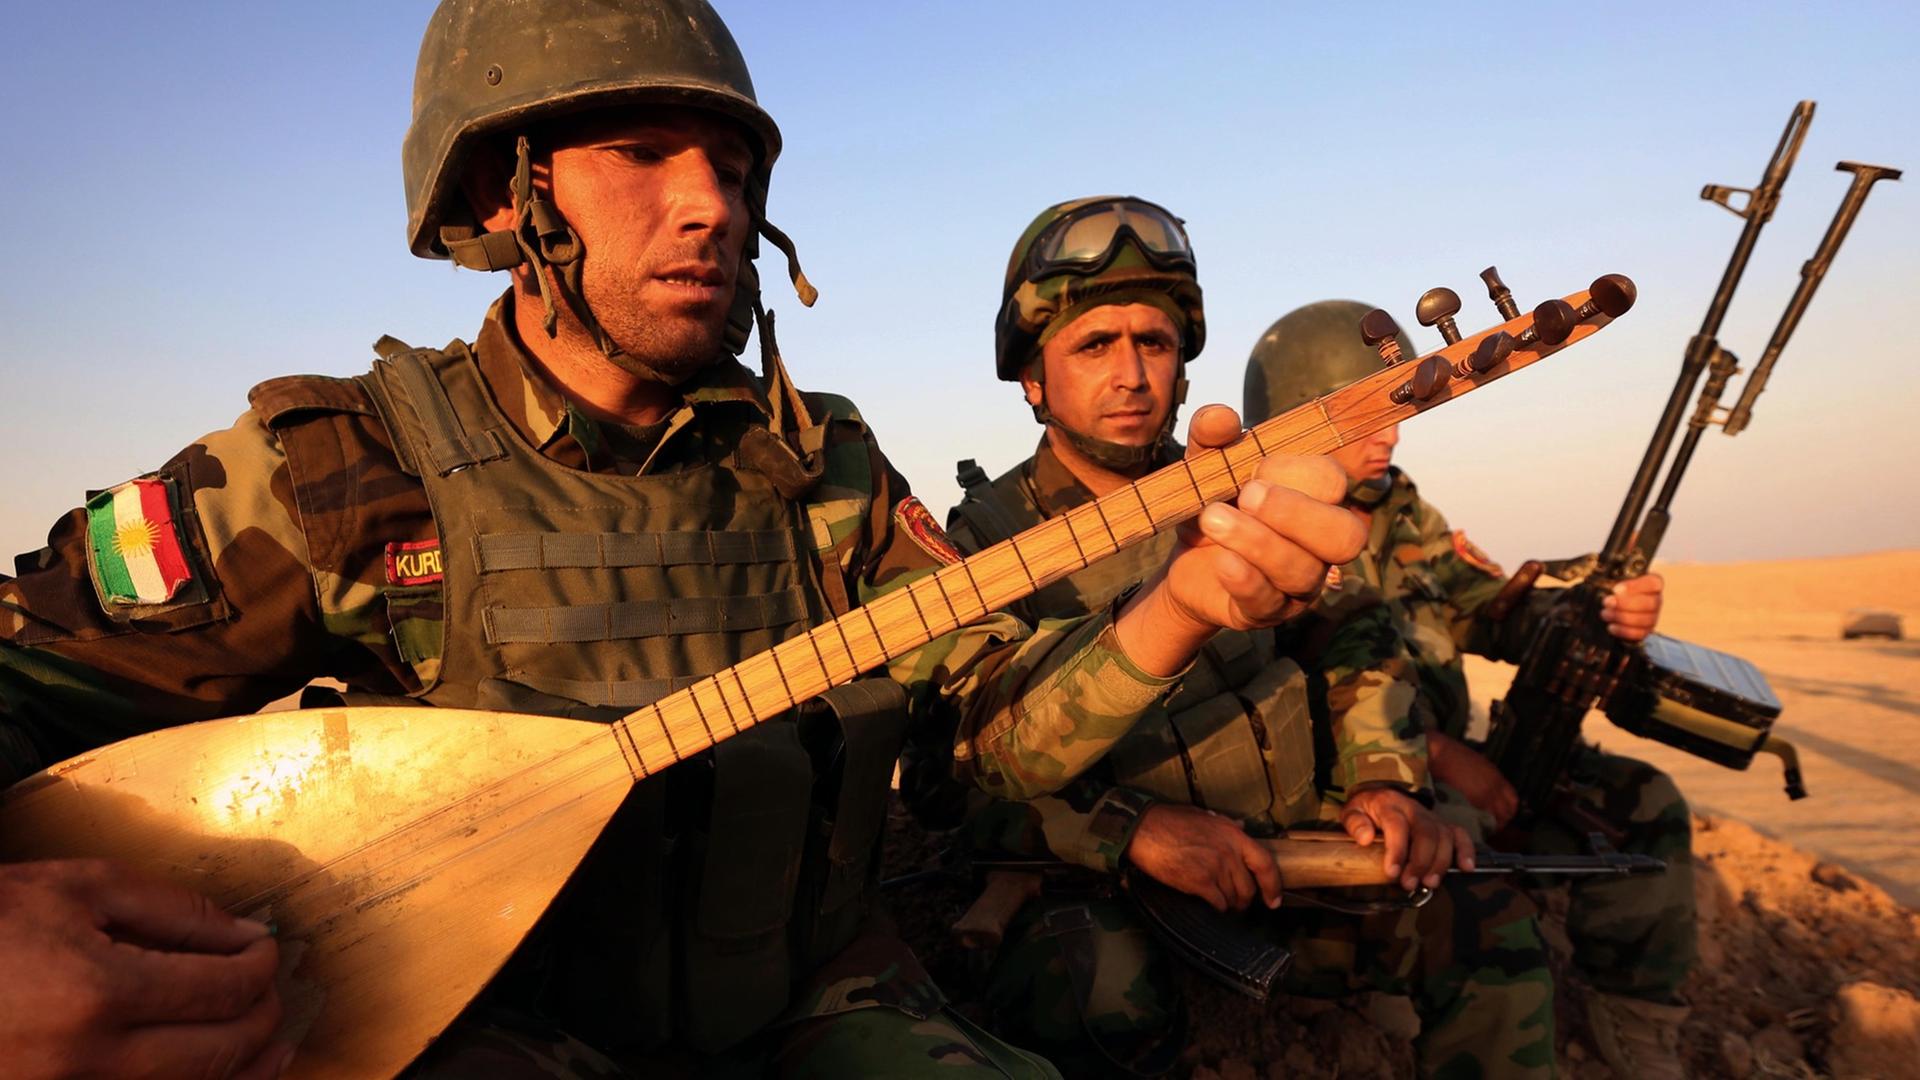 Ein irakisch-kurdischer Peshmerga-Kämpfer spielt auf einem Musikinstrument in der Nähe des Checkpoints Aski kalak, 40 km westlich von Arbil, des Haupstadt der Autonomen Kudischen Region Nordirak. Aufgenommen am 14. August 2014.